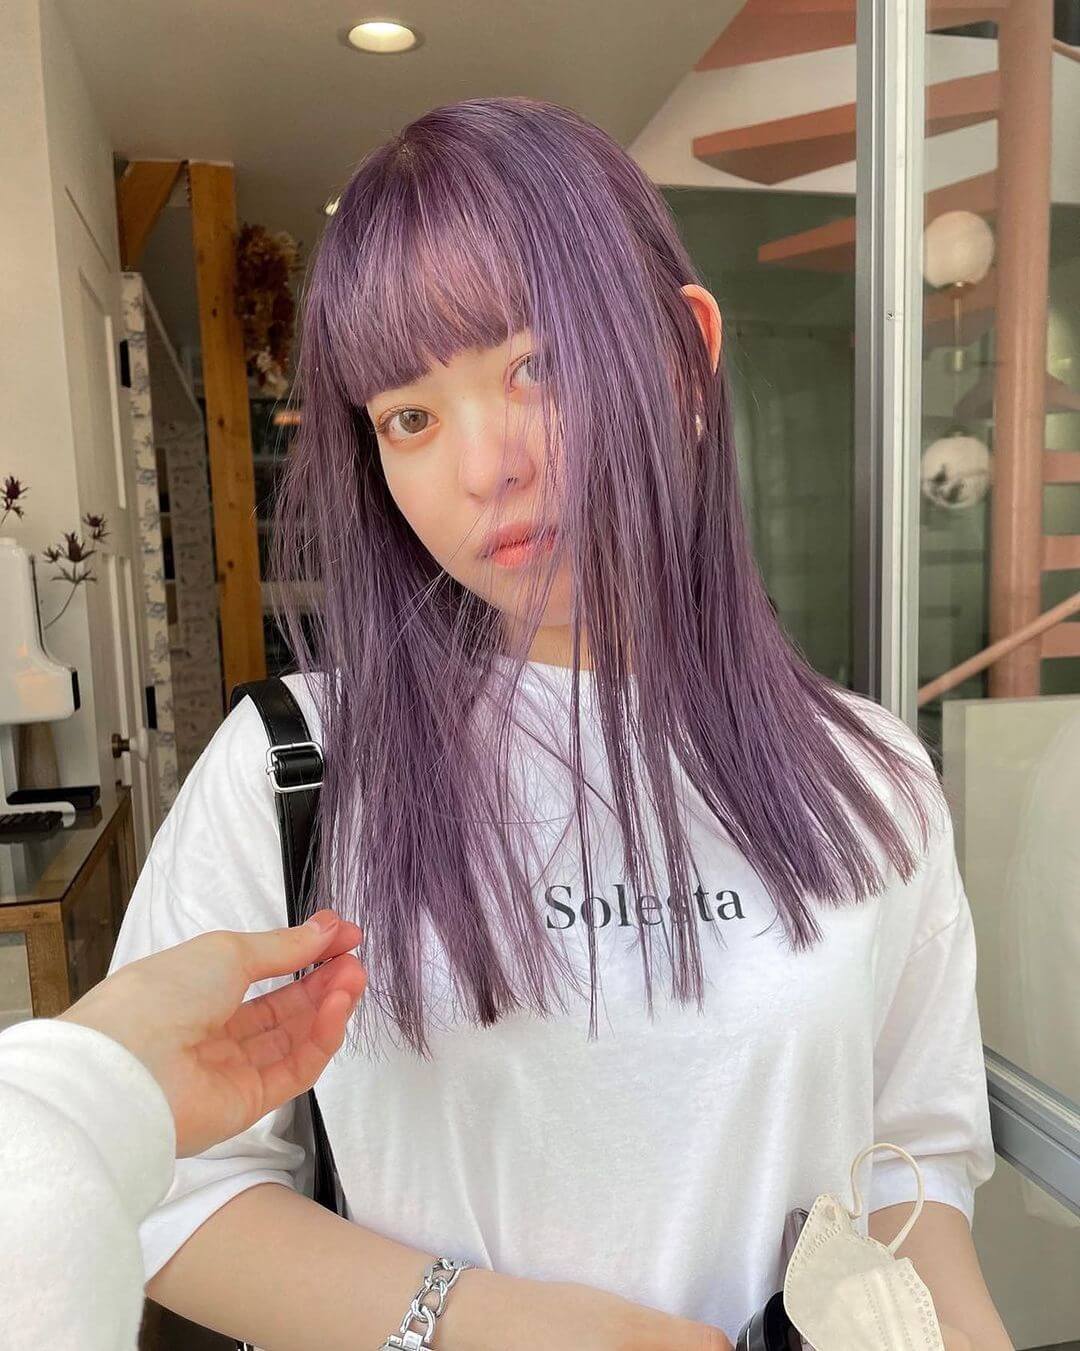 ヘアカラー紫の髪色・ぱっつん前髪のセミロング